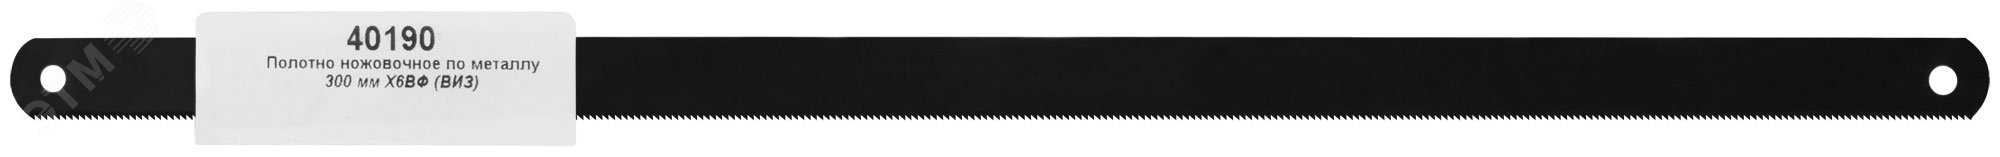 Полотно ножовочное по металлу 300 мм Х6ВФ (ВИЗ) 40190 РОС - превью 3